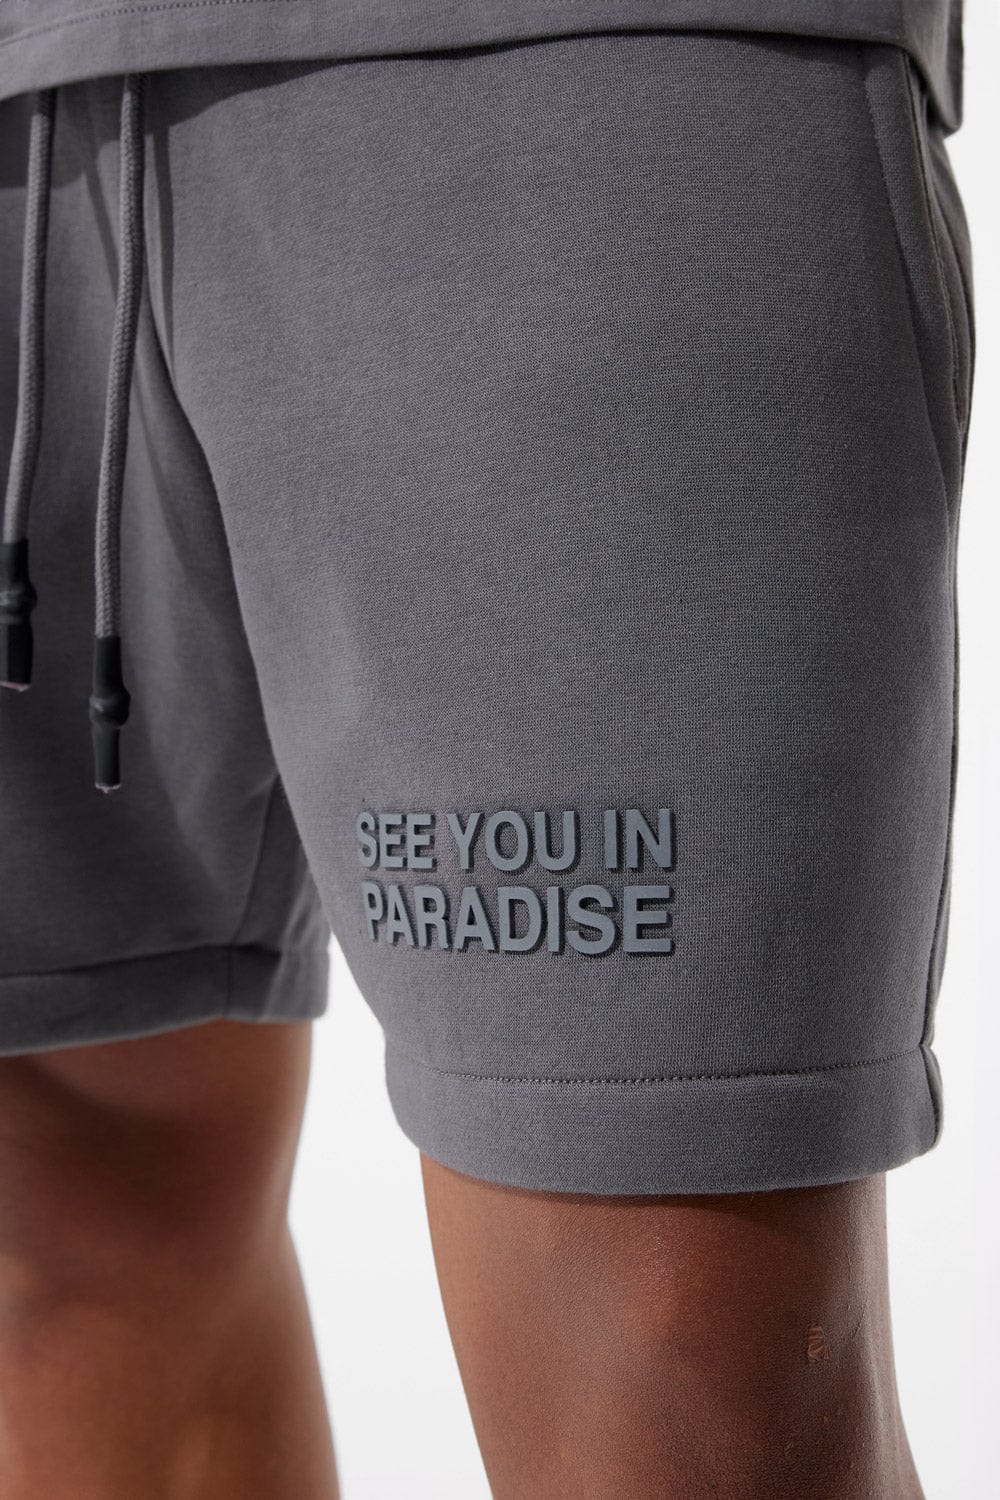 Jordan Craig Retro - Paradise Tonal Shorts (Charcoal)